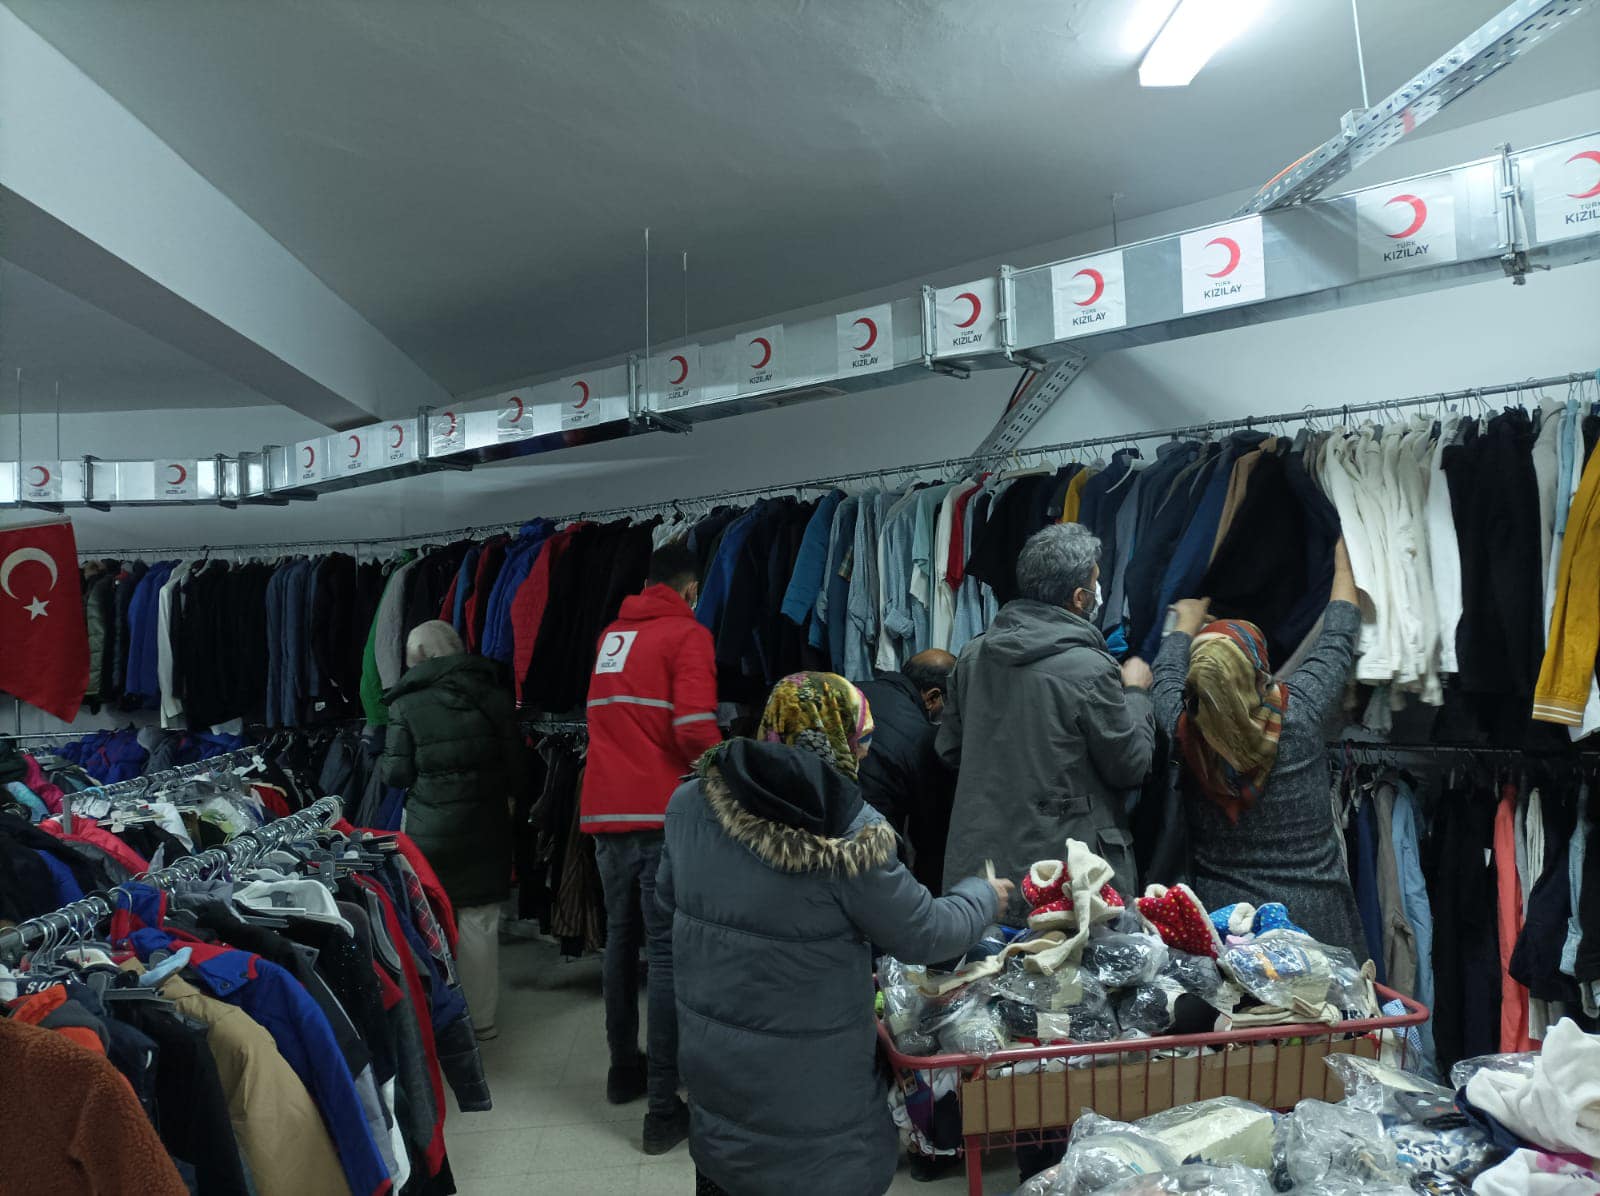 Türk Kızılay Elazığ şubesi olarak ihtiyaç sahiplerimiz için butik mağazamızda kıyafet dağıtımlarımıza devam ediyoruz🌙 (7)